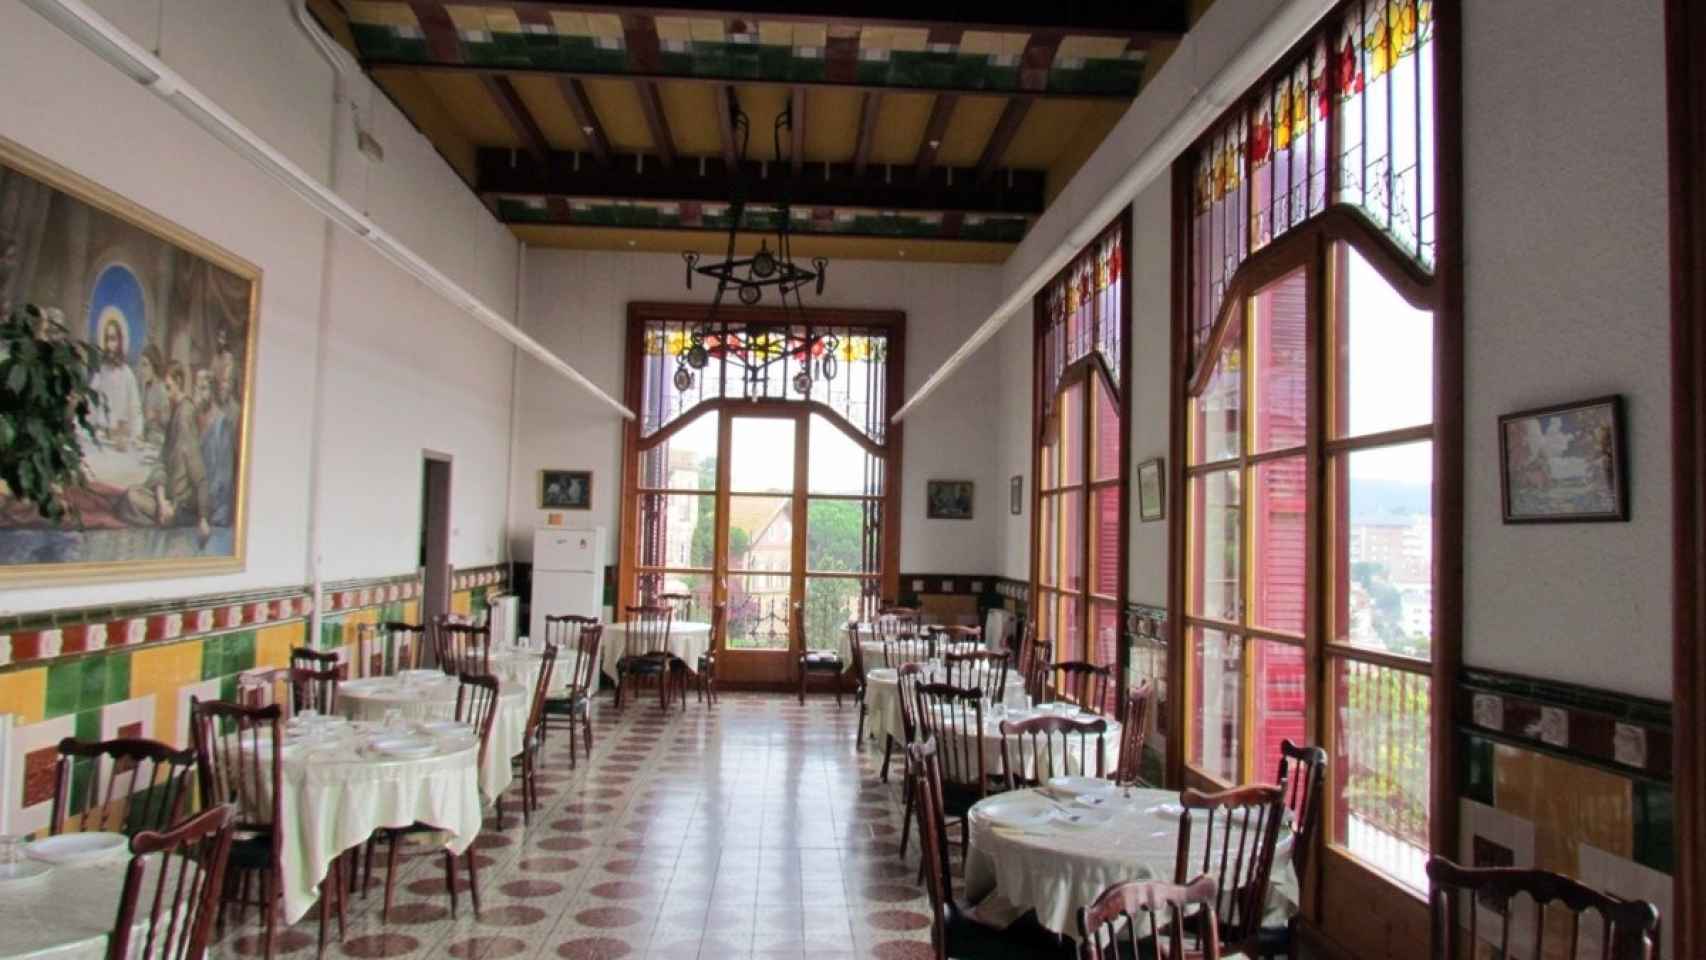 Interior de la casa modernista Buenos Aires, una mansión modernista